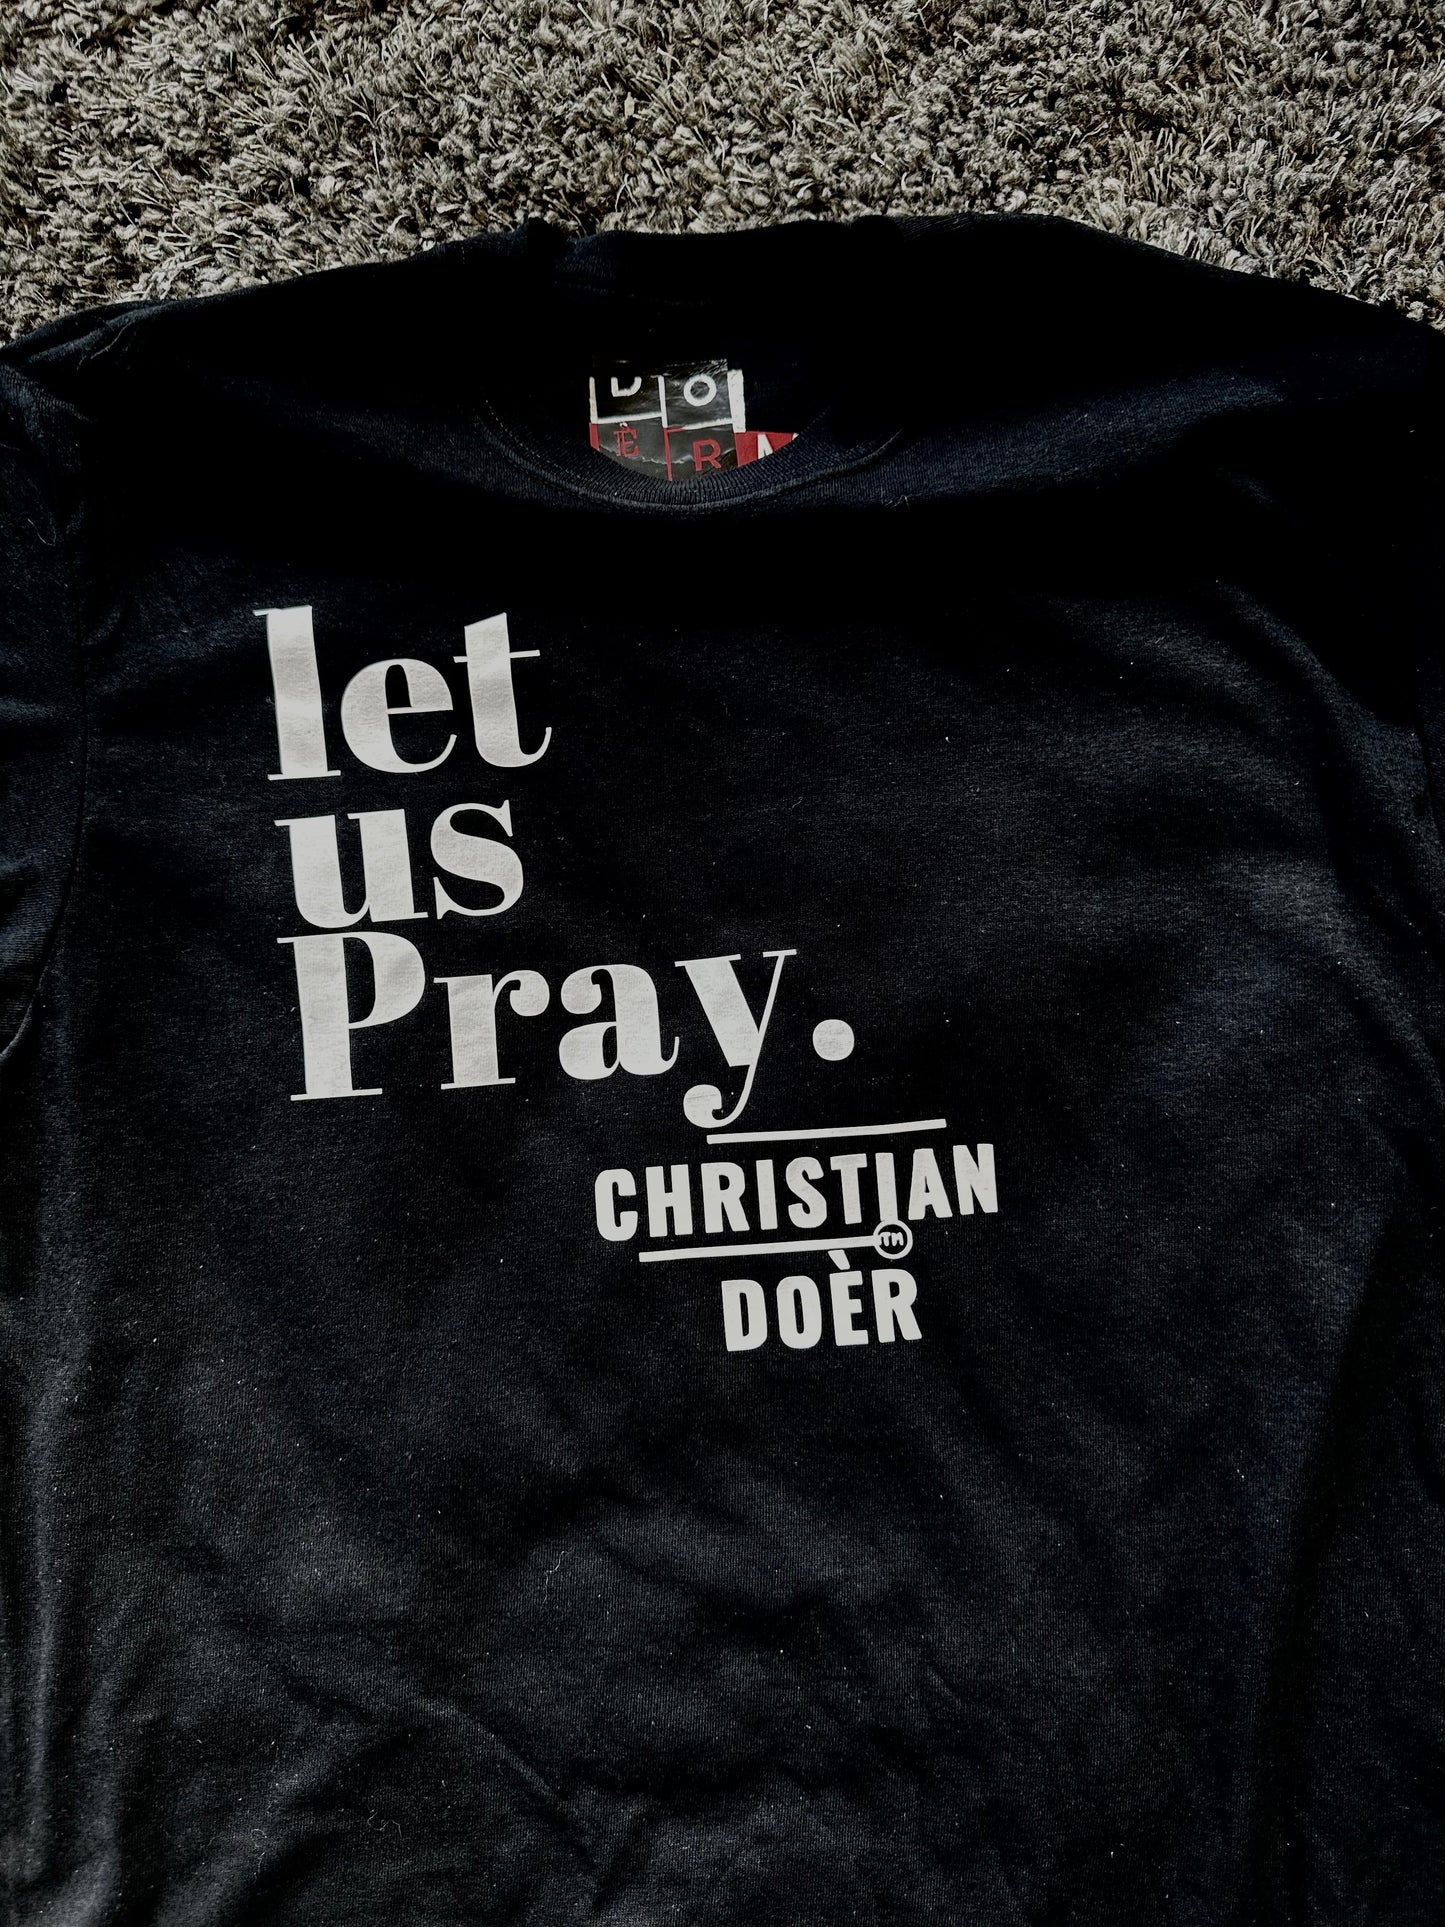 Christian Doèr - Christian Doèr - Let us Pray – Christian Doèr Fashion